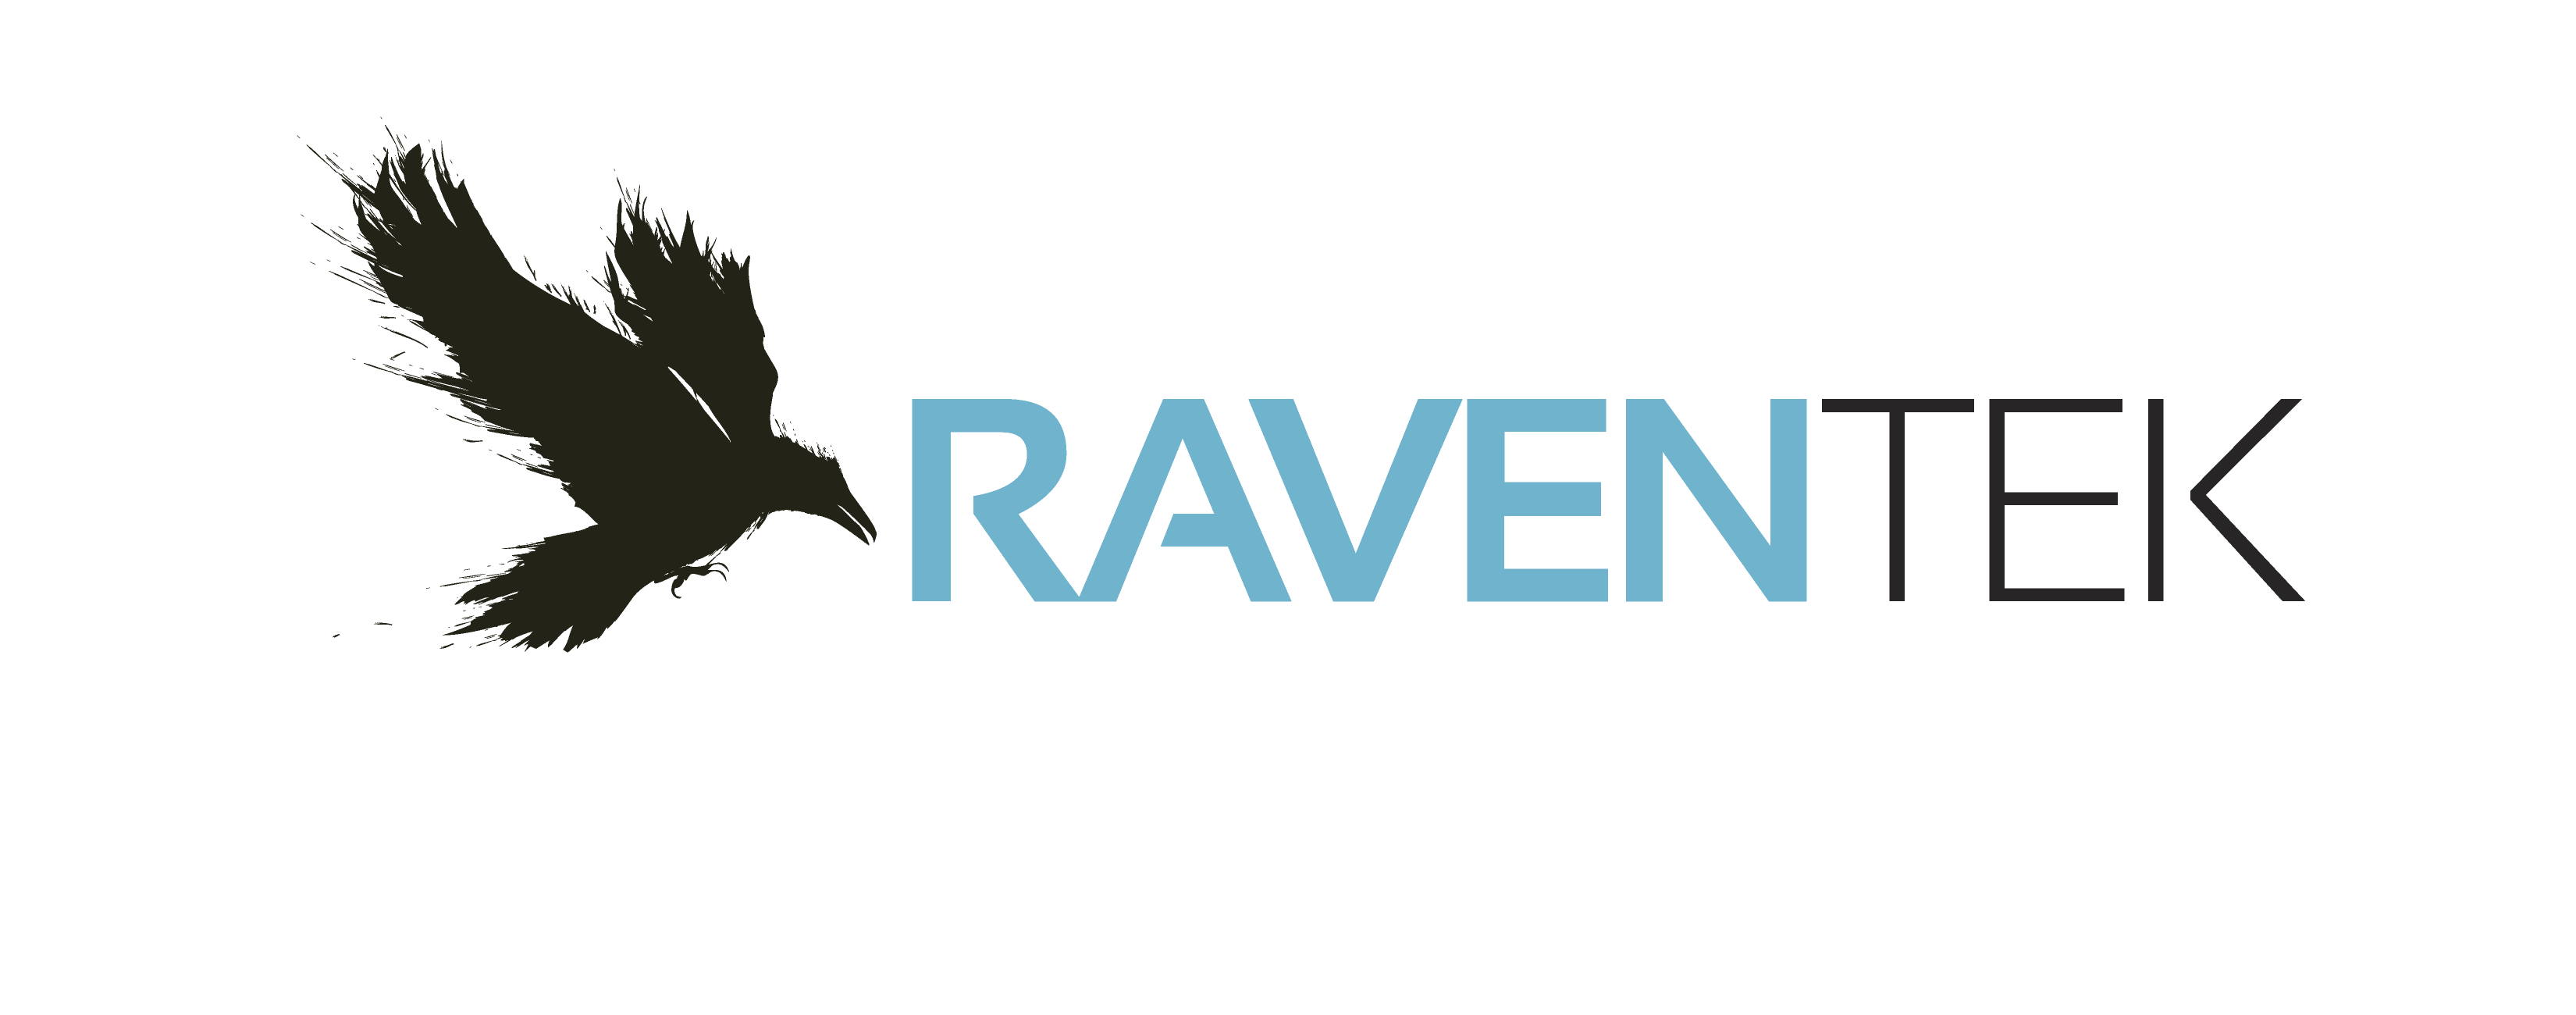 RavenTek Companies Company Logo